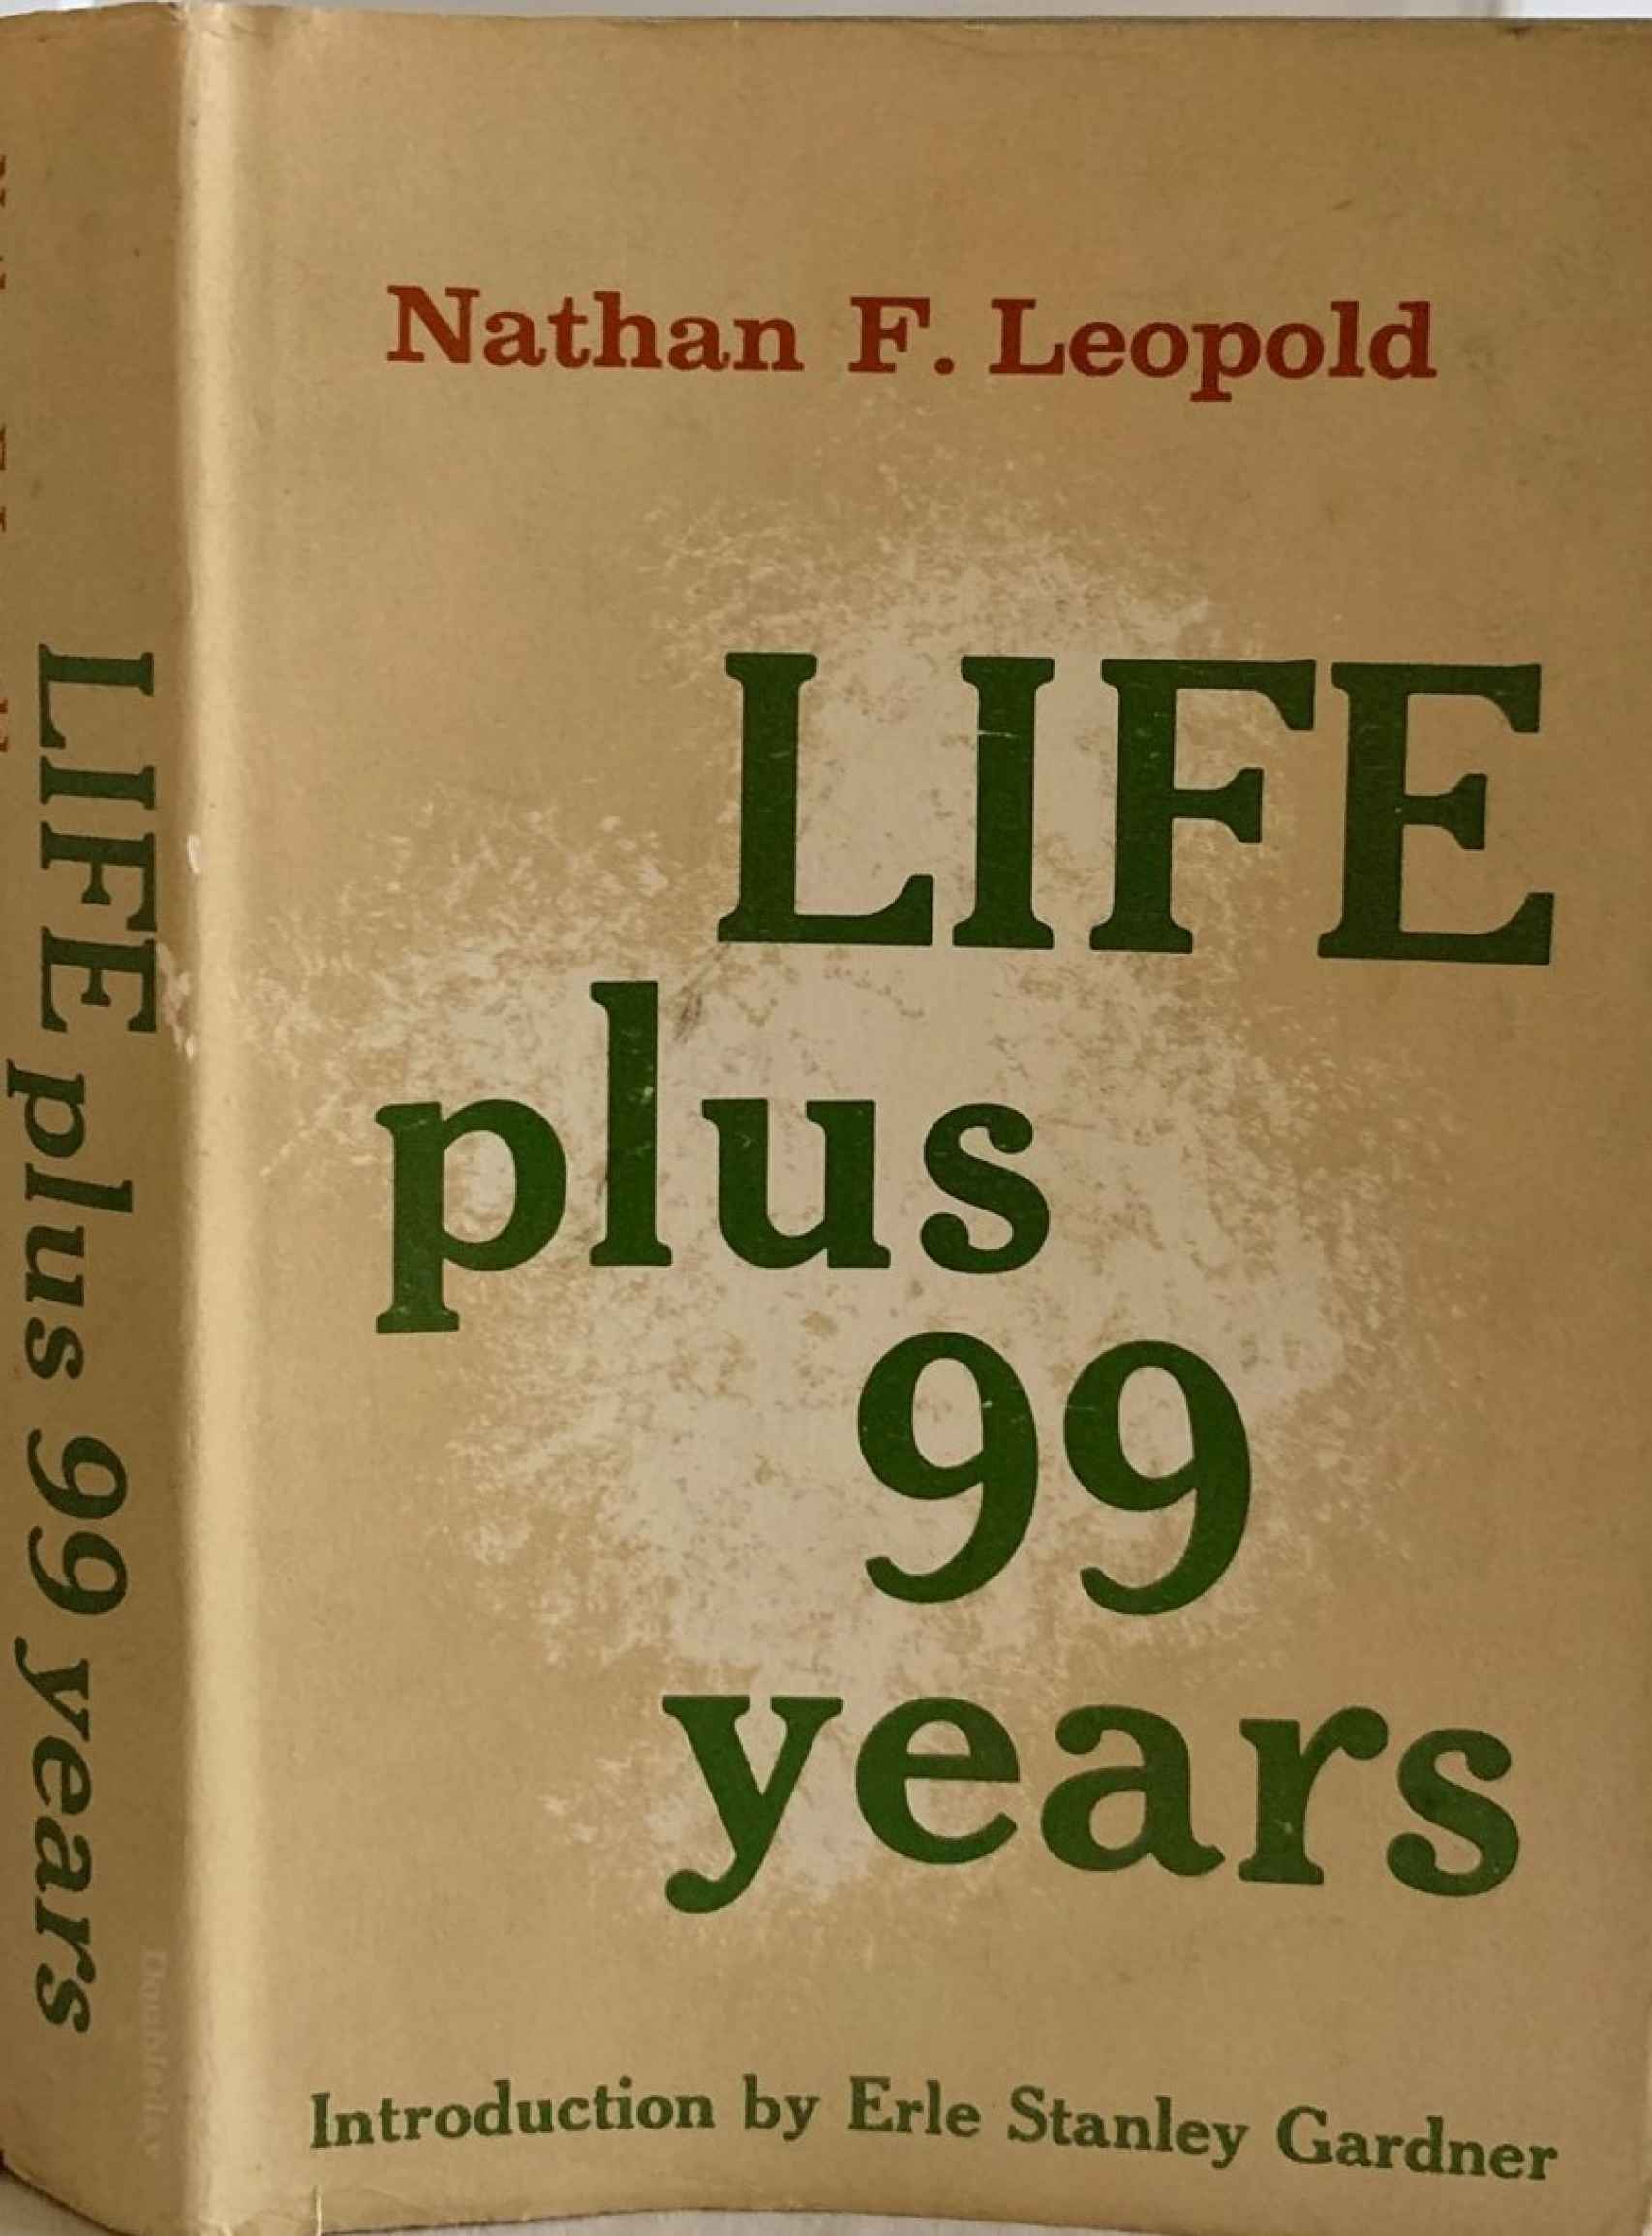 La autobiografía de Nathan Leopold, un best-seller con prólogo del creador de Perry Mason